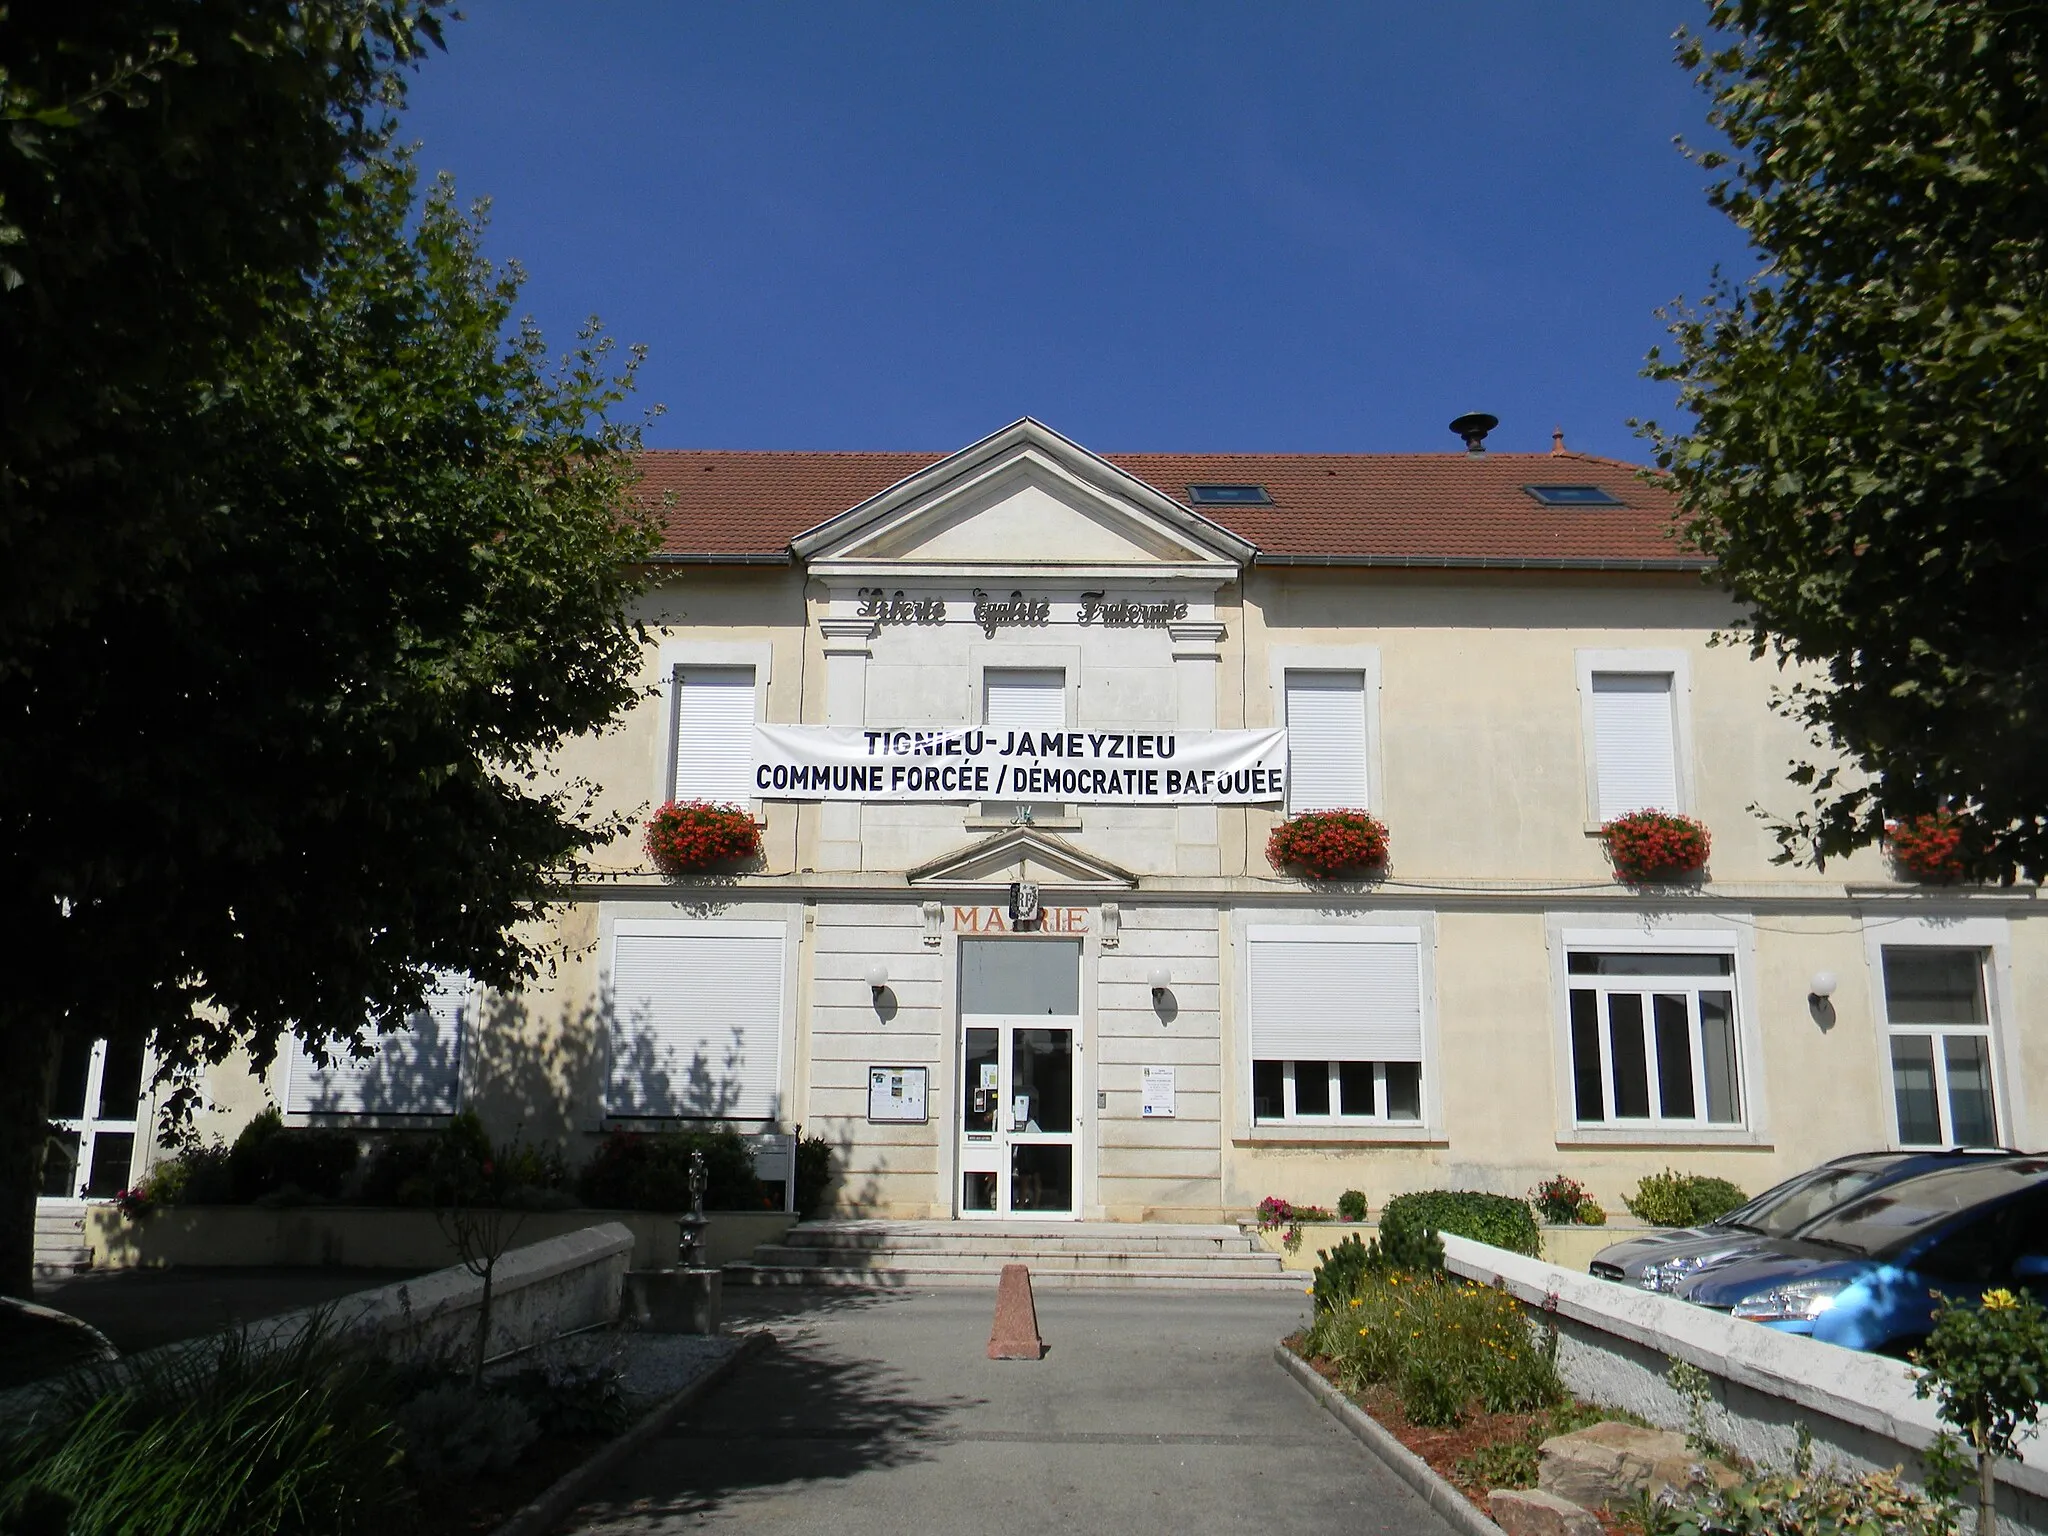 Photo showing: Mairie de Tignieu affichant une banderole "Tignieu-Jameyzieu - Commune forcée / Démocratie baffouée".